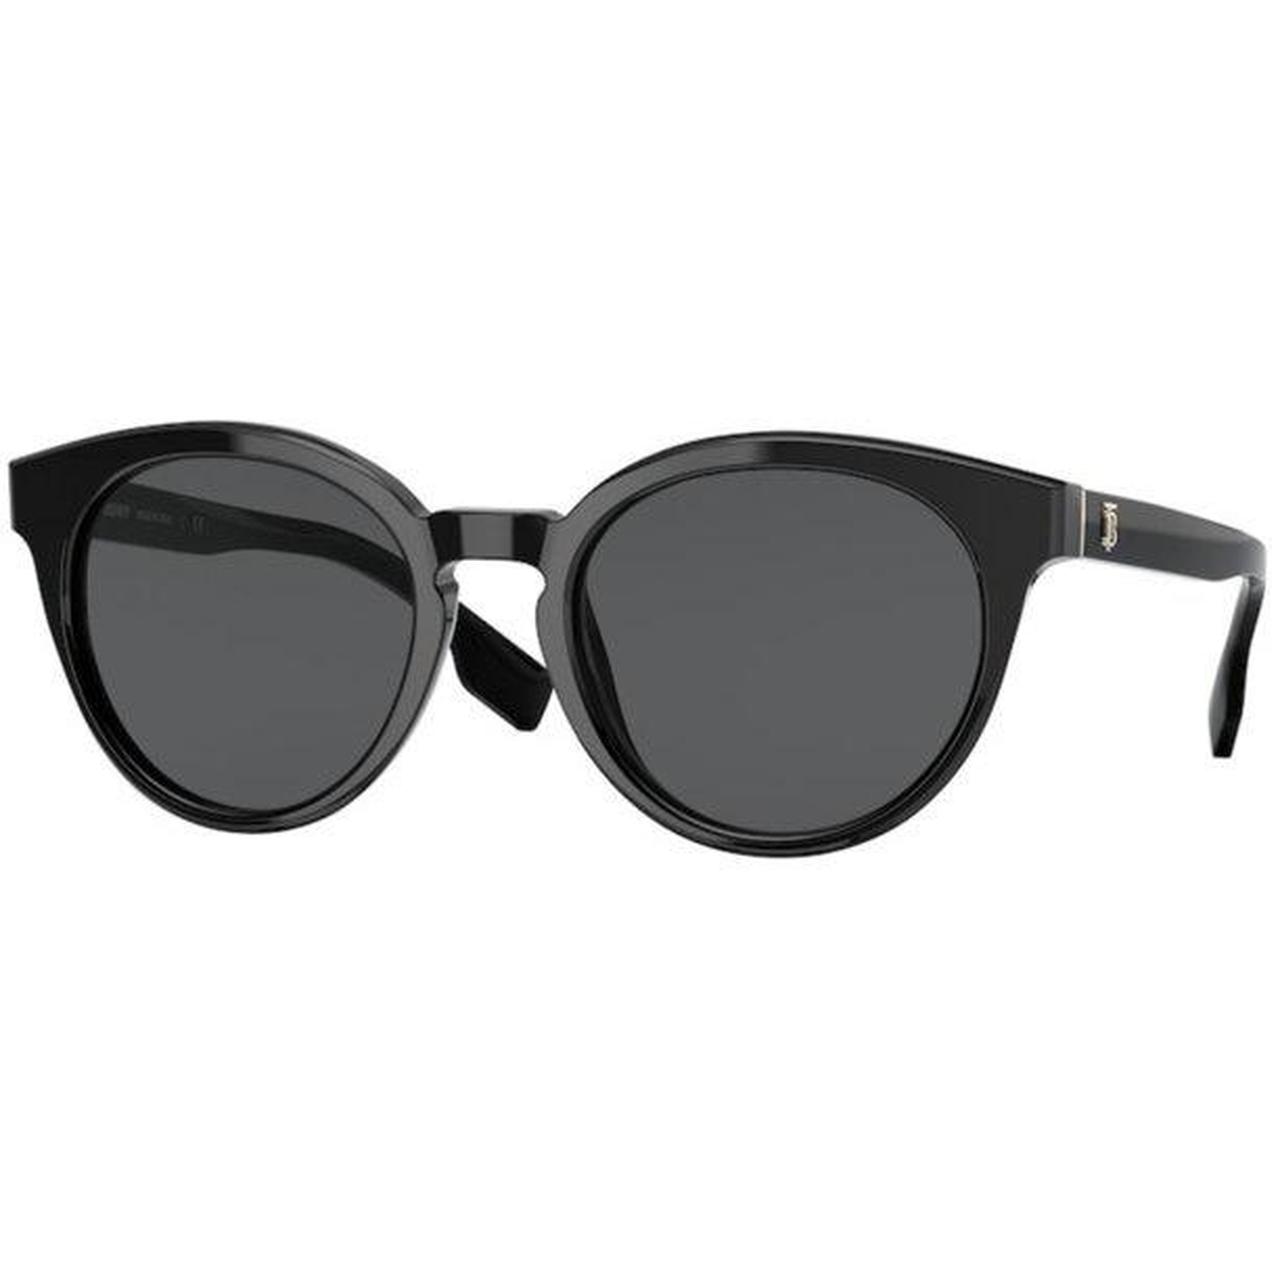 Burberry sunglasses #burberry #sunglasses #black... - Depop